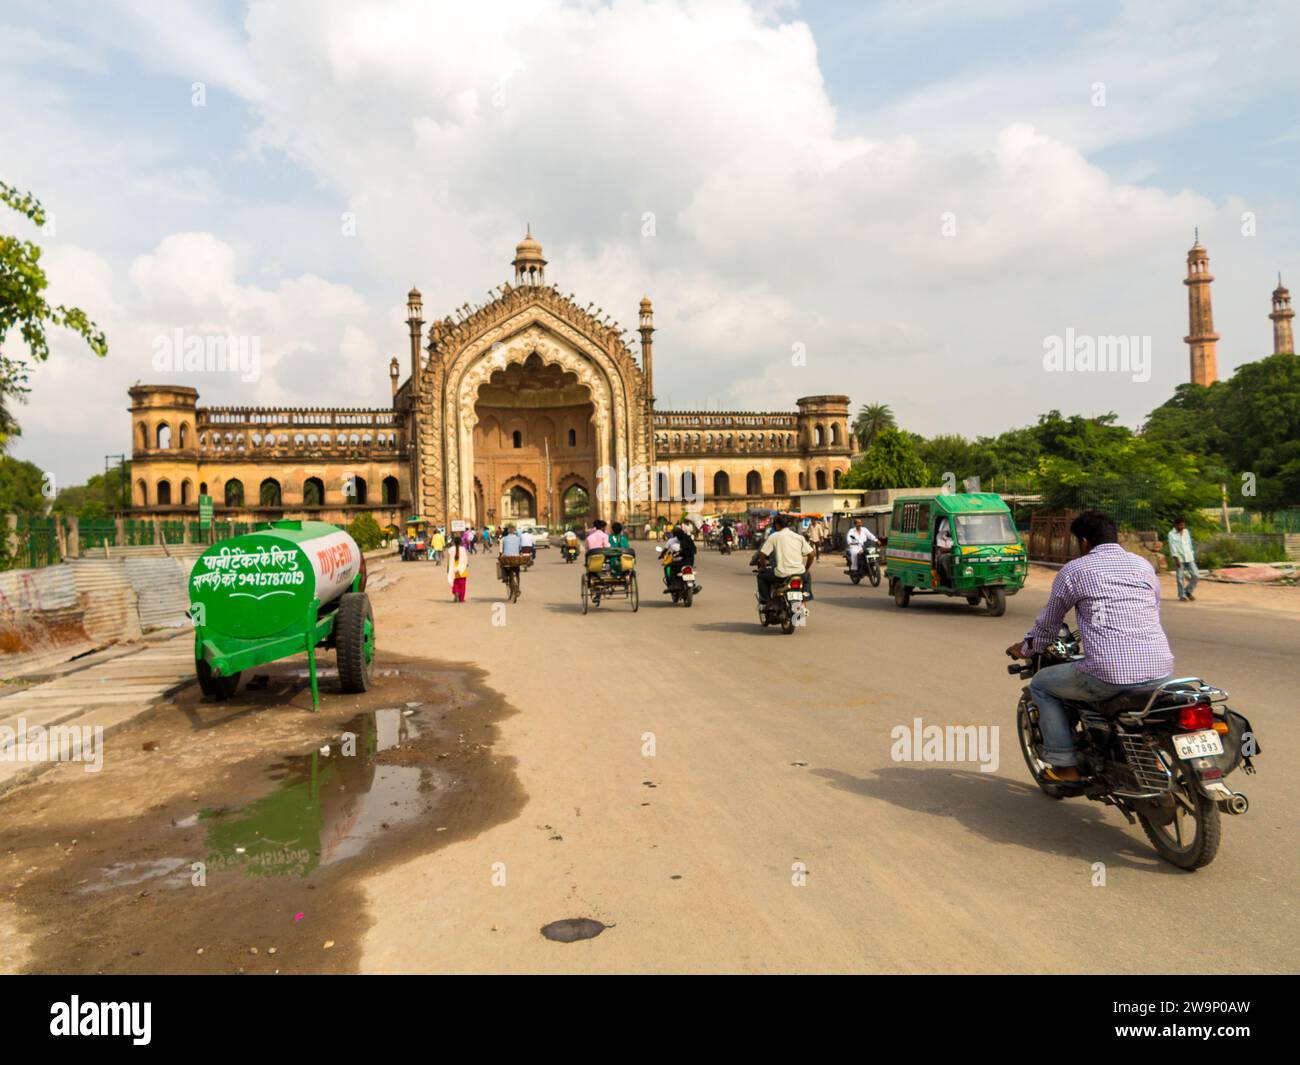 Motocyclistes devant Rumi Darwaza ou porte turque, Lucknow, Uttar Pradesh, Inde Banque D'Images